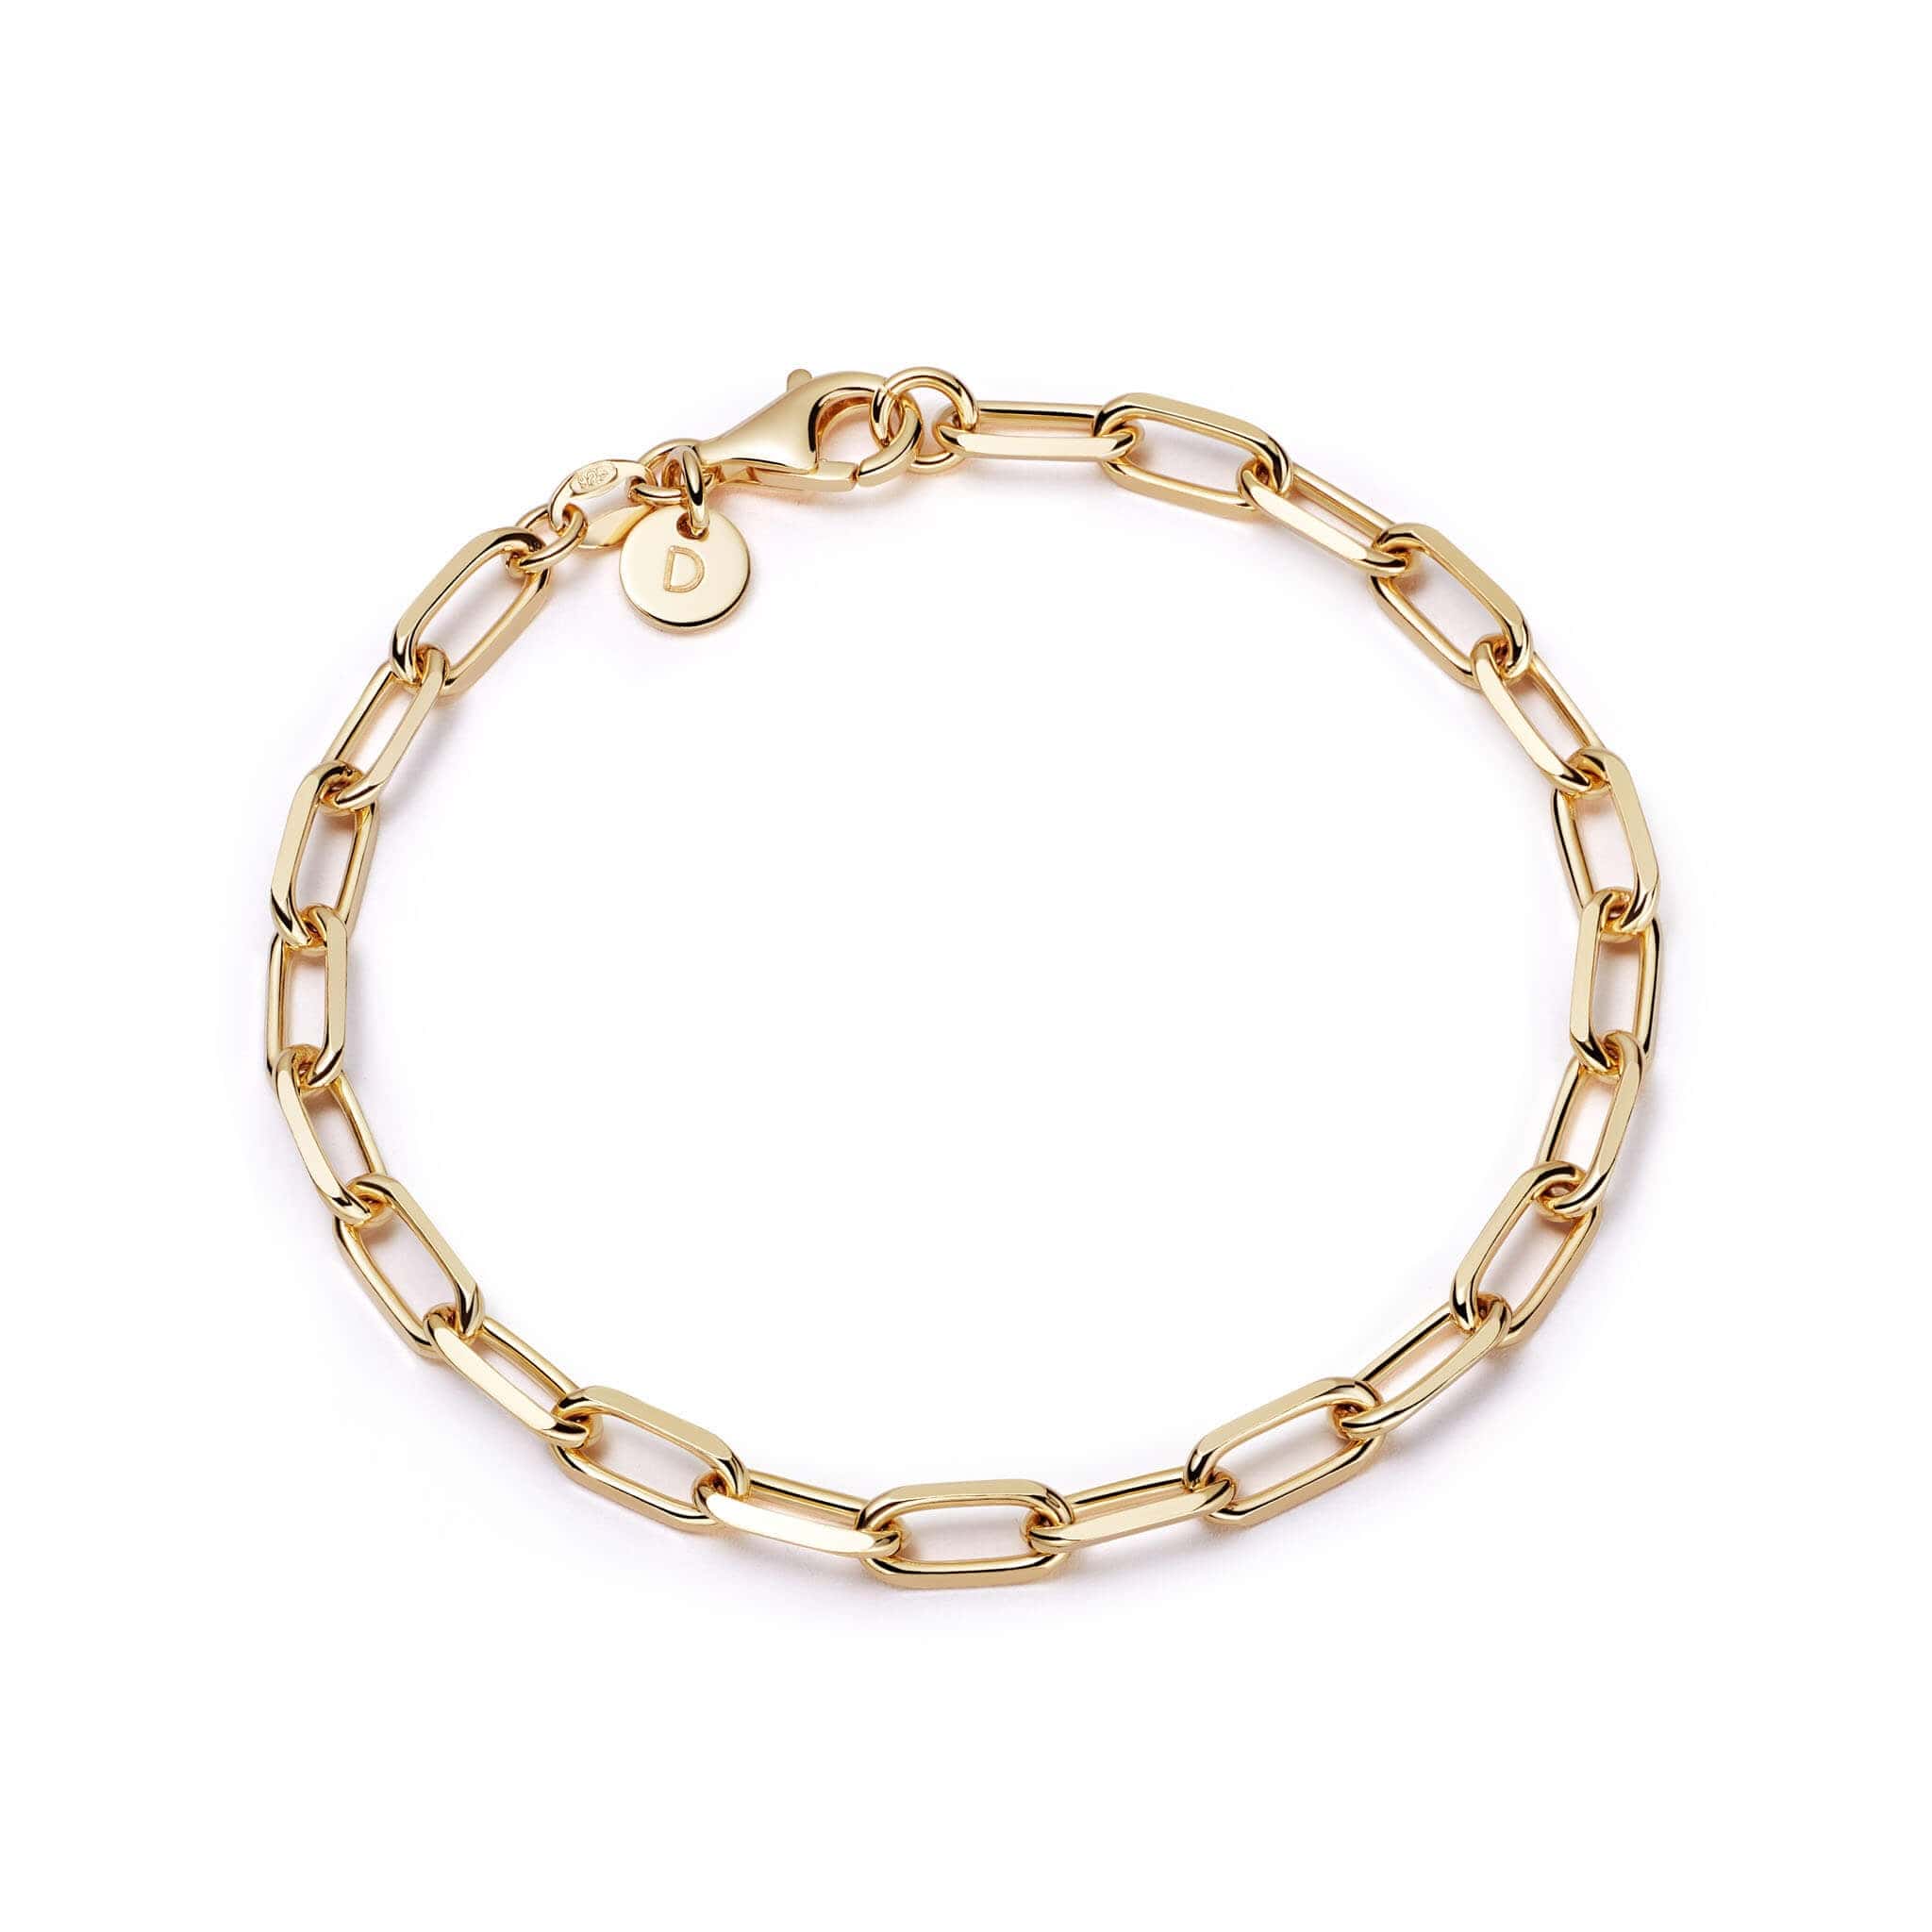 shrimps chunky chain bracelet 18ct gold plate bracelets daisy london